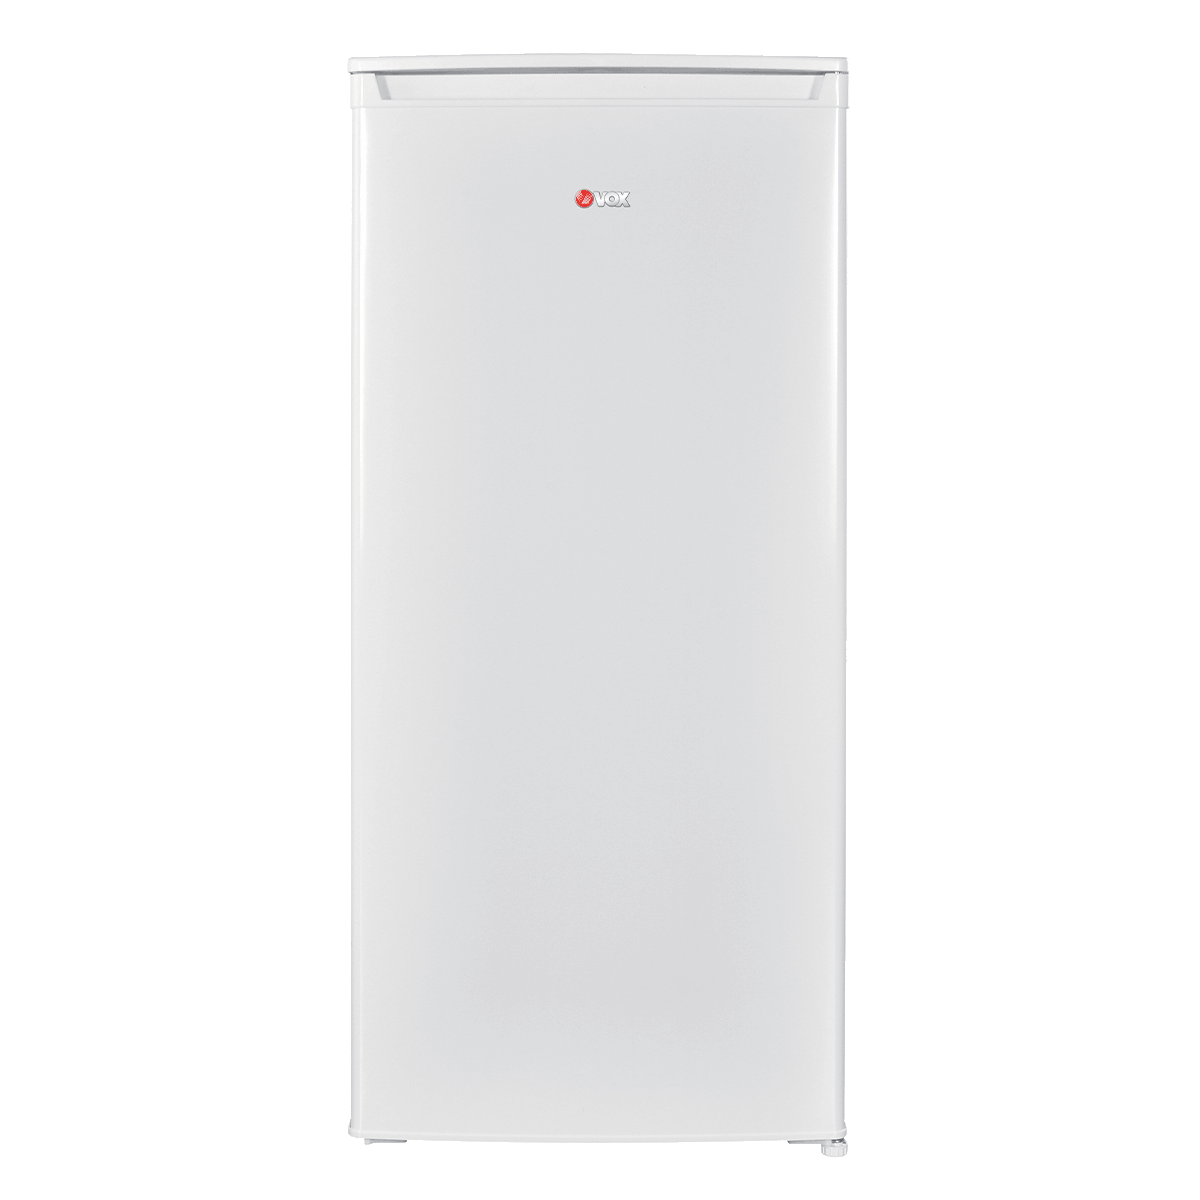 Refrigerator KS 2110 E 